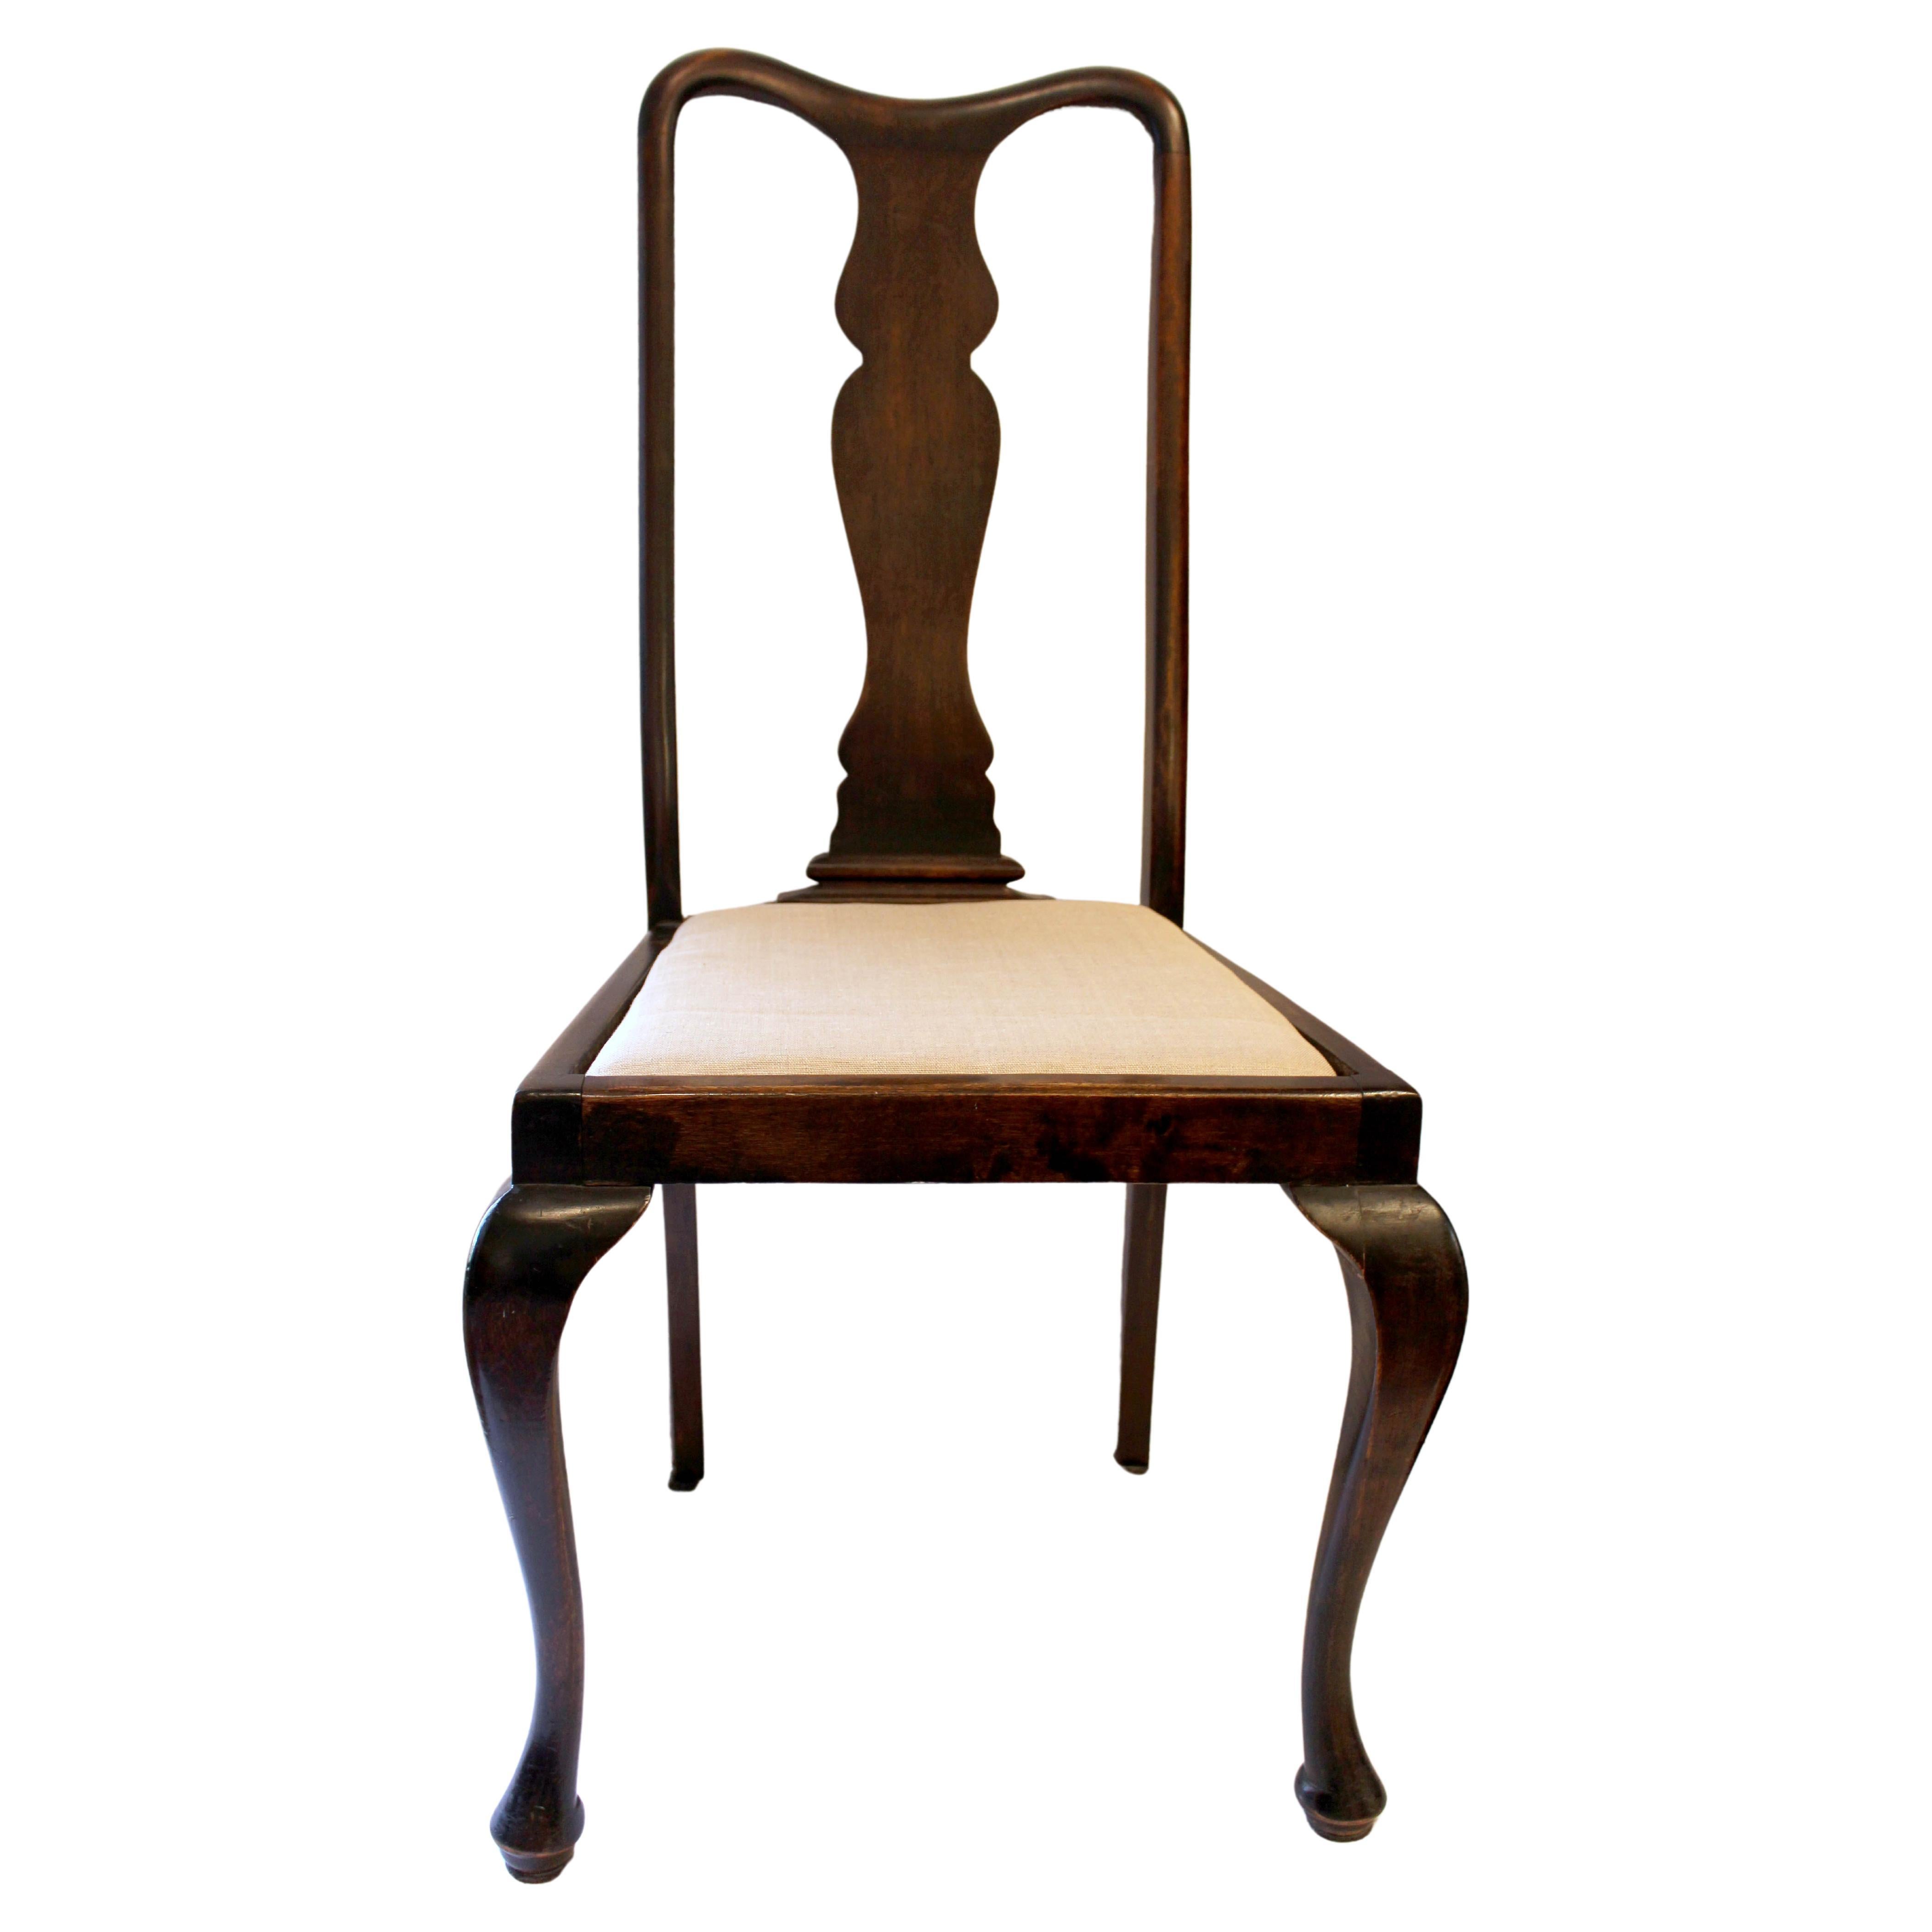 Fin du 19e siècle Chaise d'appoint de style Queen Anne, anglais